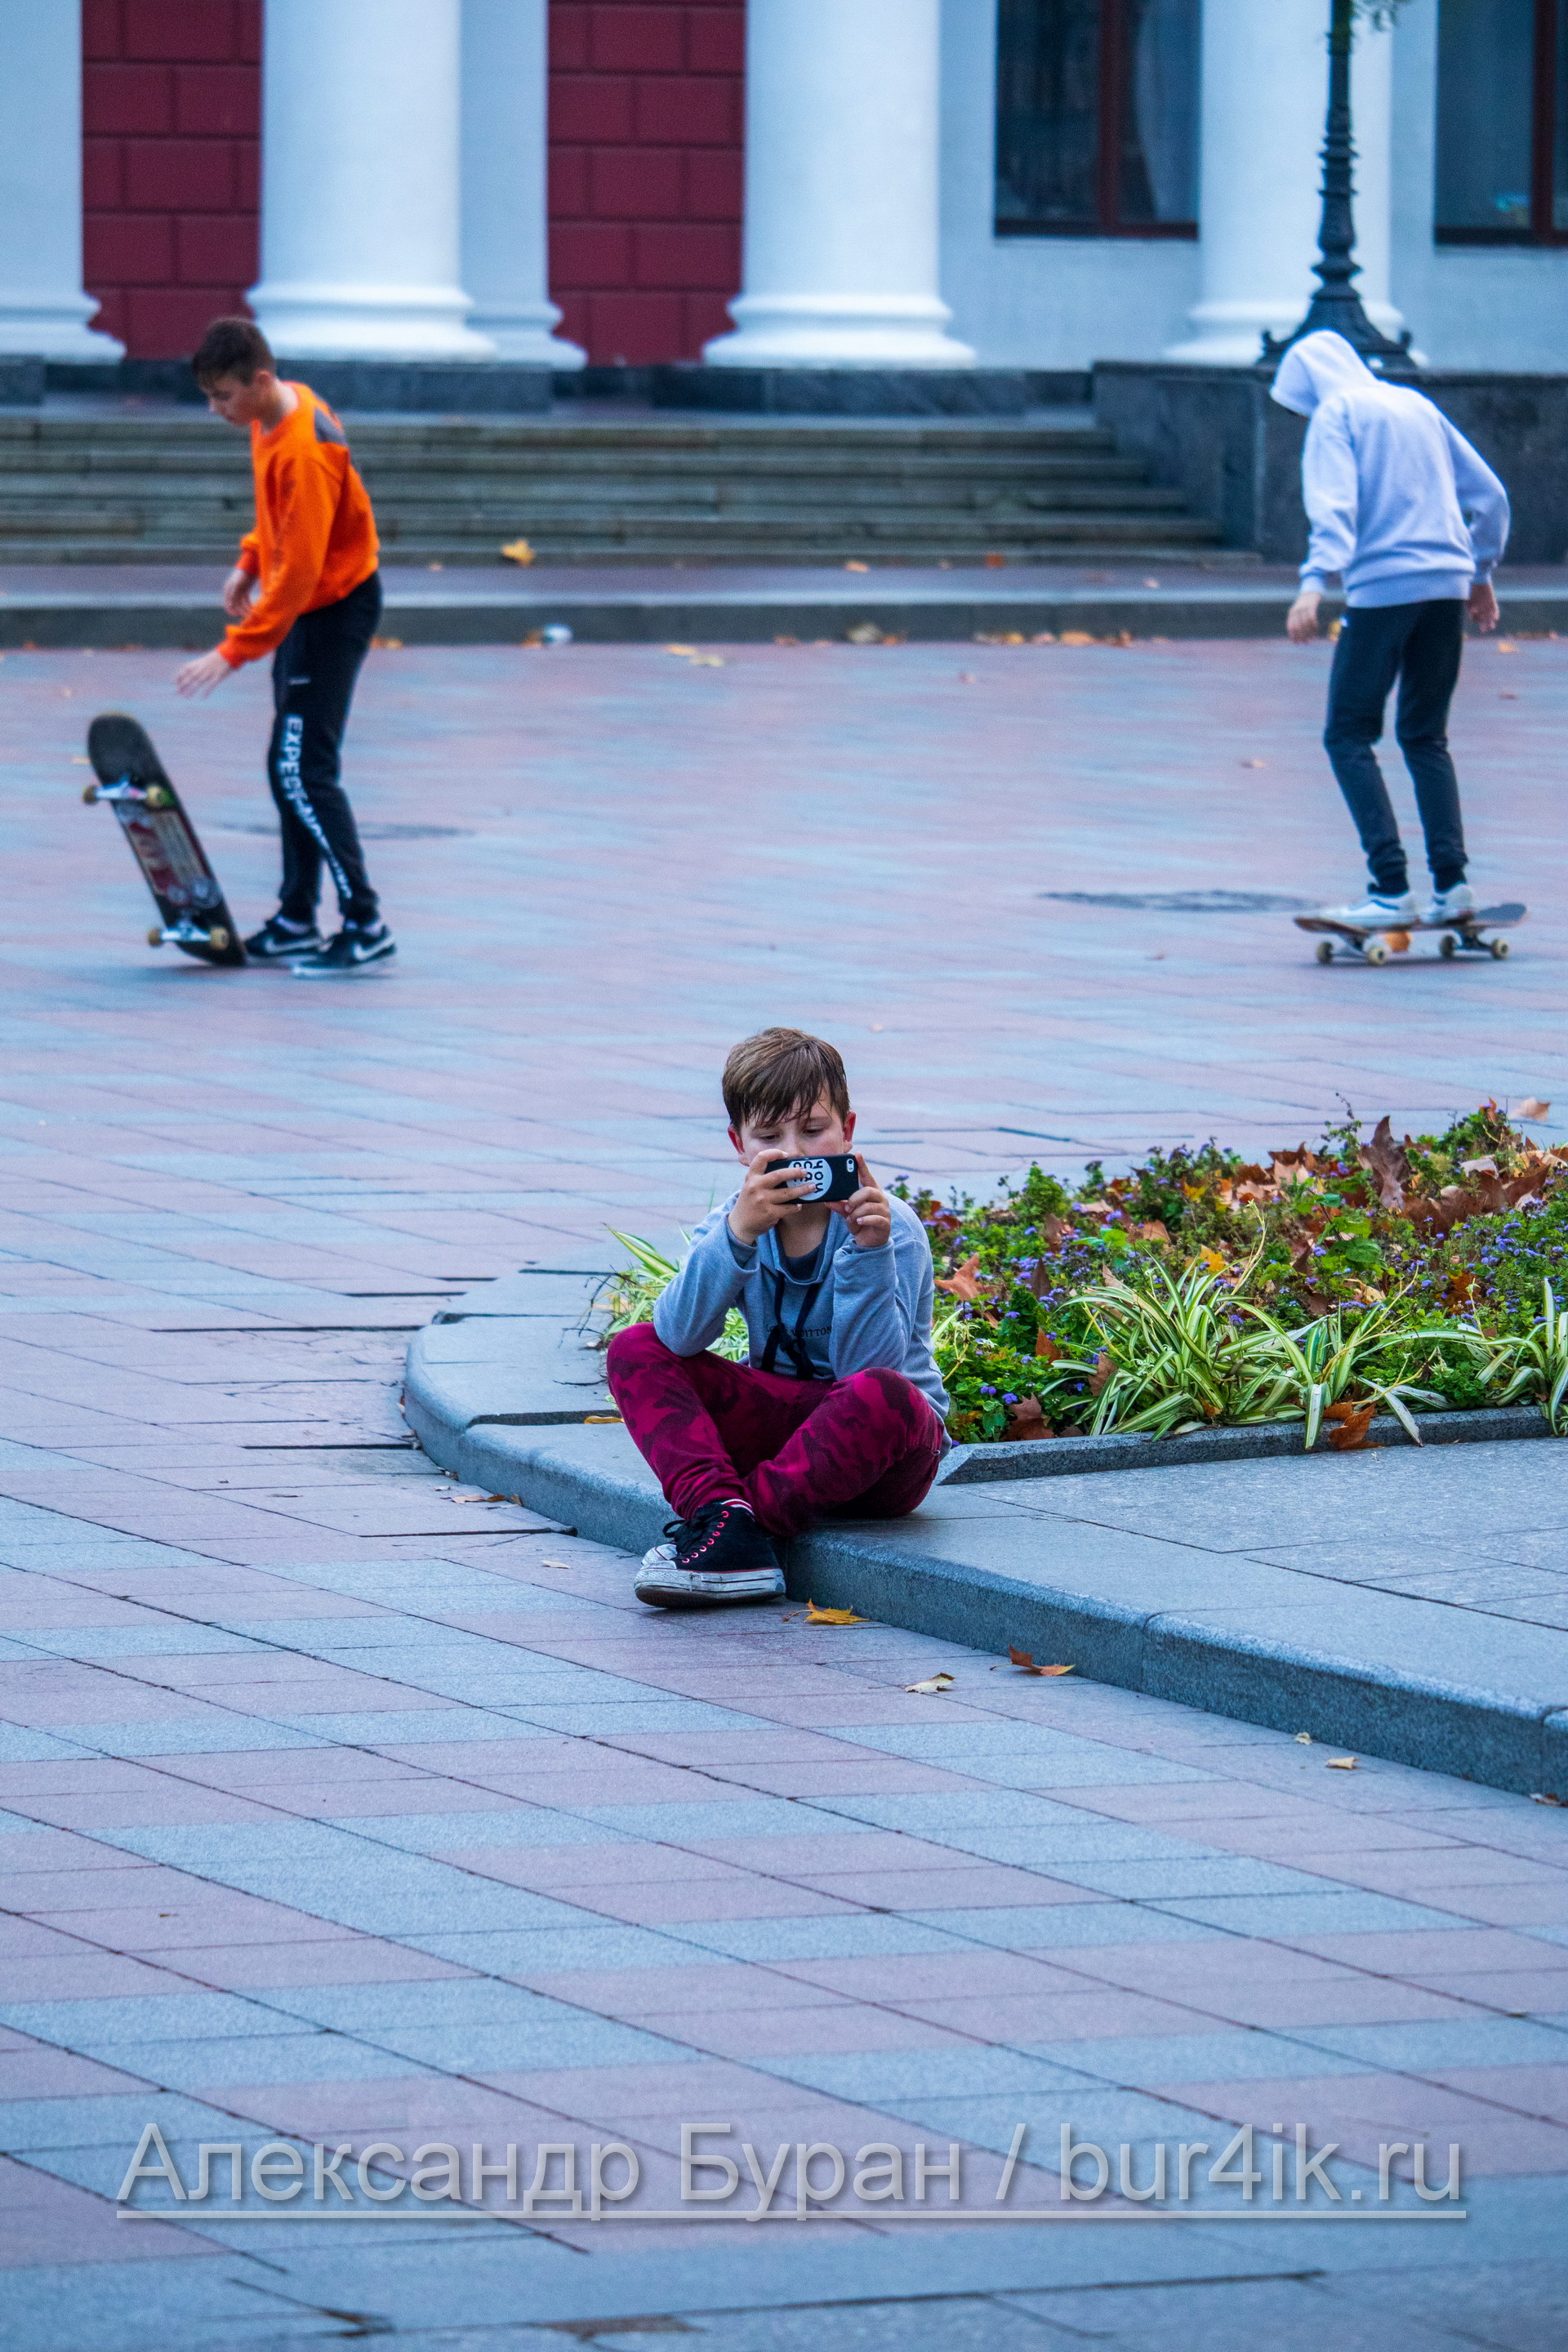 Парень подросток стреляет друг, который катается на скейтборде на обычный смартфон - Украина, Одесса, 09,11,2019